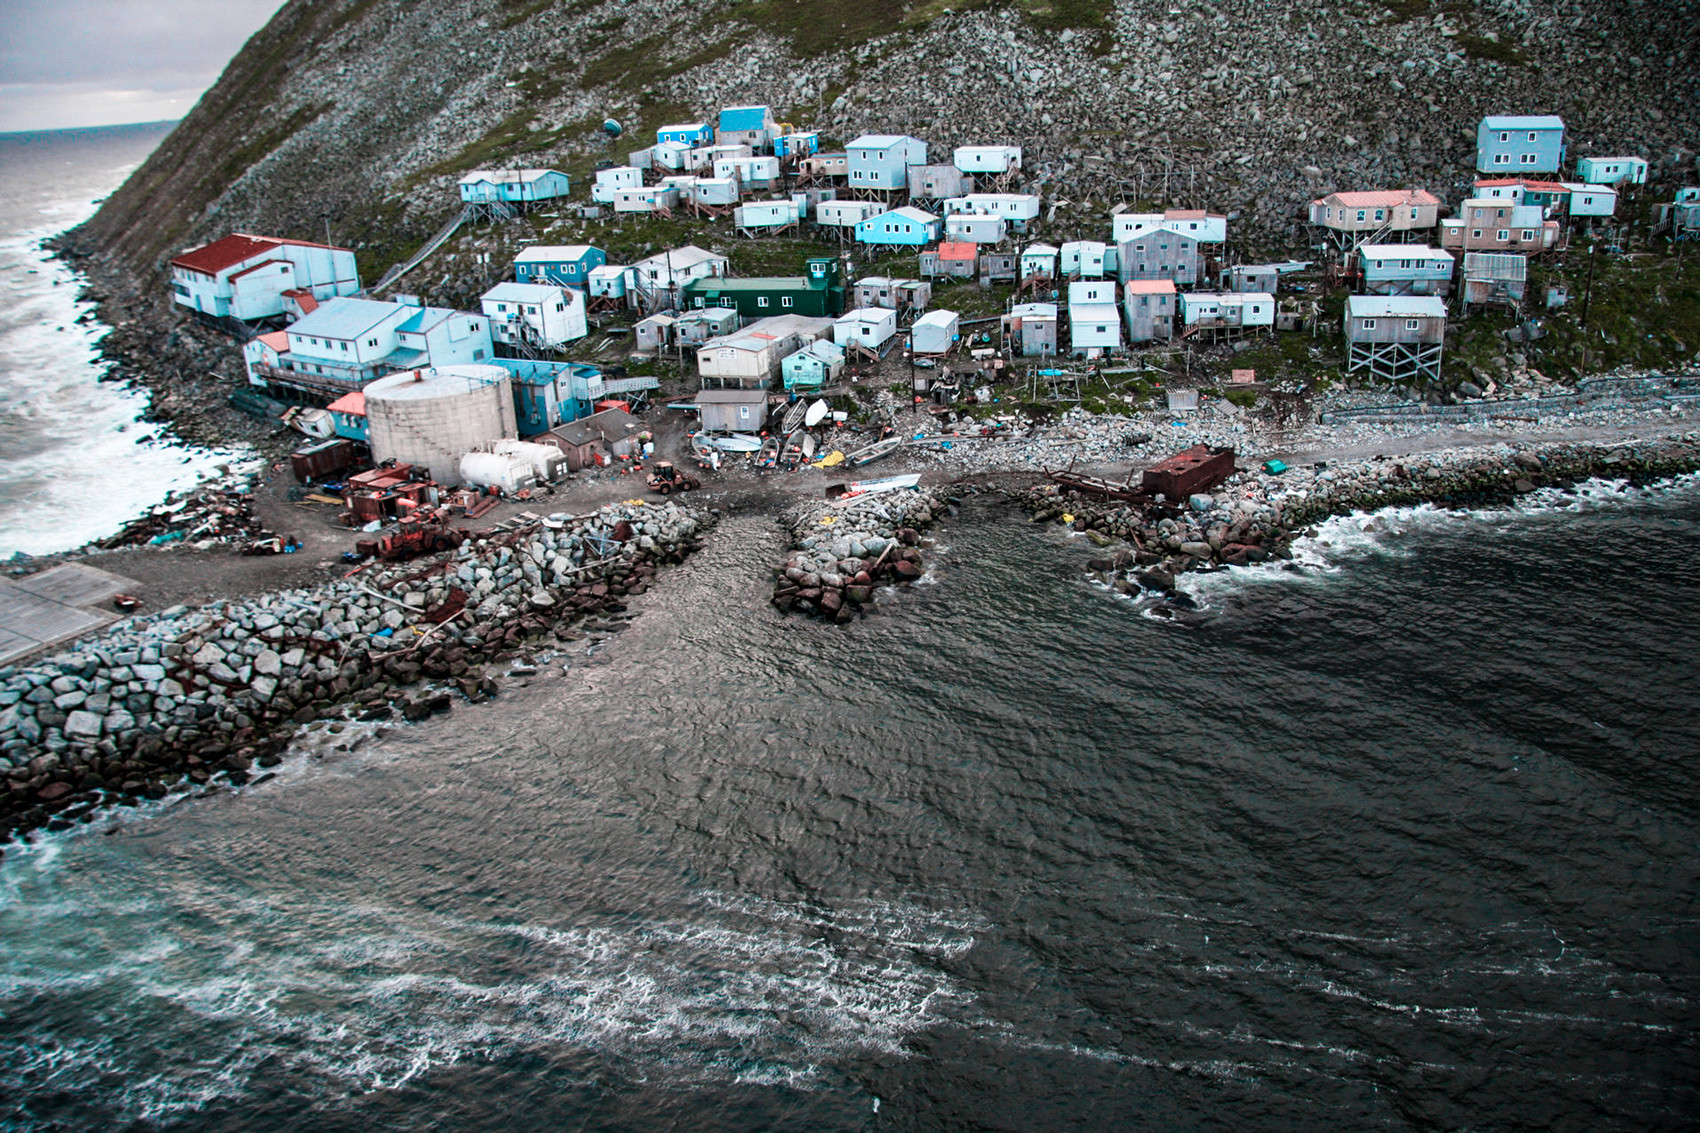 Sebuah desa di Pulau Diomede Kecil yang terletak di perbatasan Rusia dan Amerika Serikat.